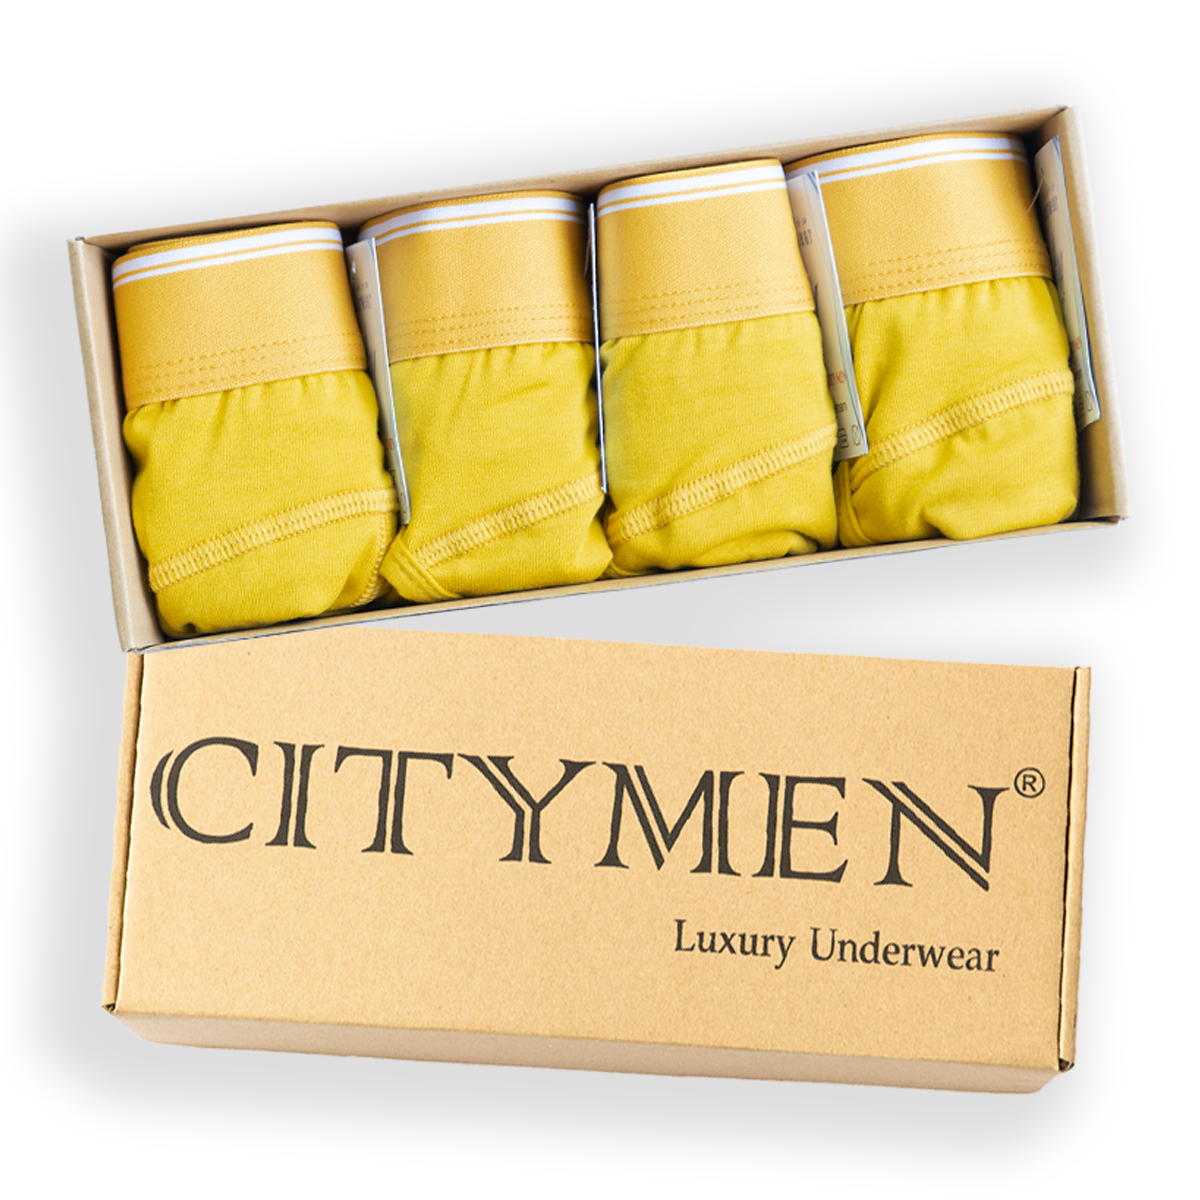 Hộp 4 Quần lót nam CITYMEN bản đặc biệt vải cotton co dãn 4 chiều cao cấp lưng trơn màu vàng